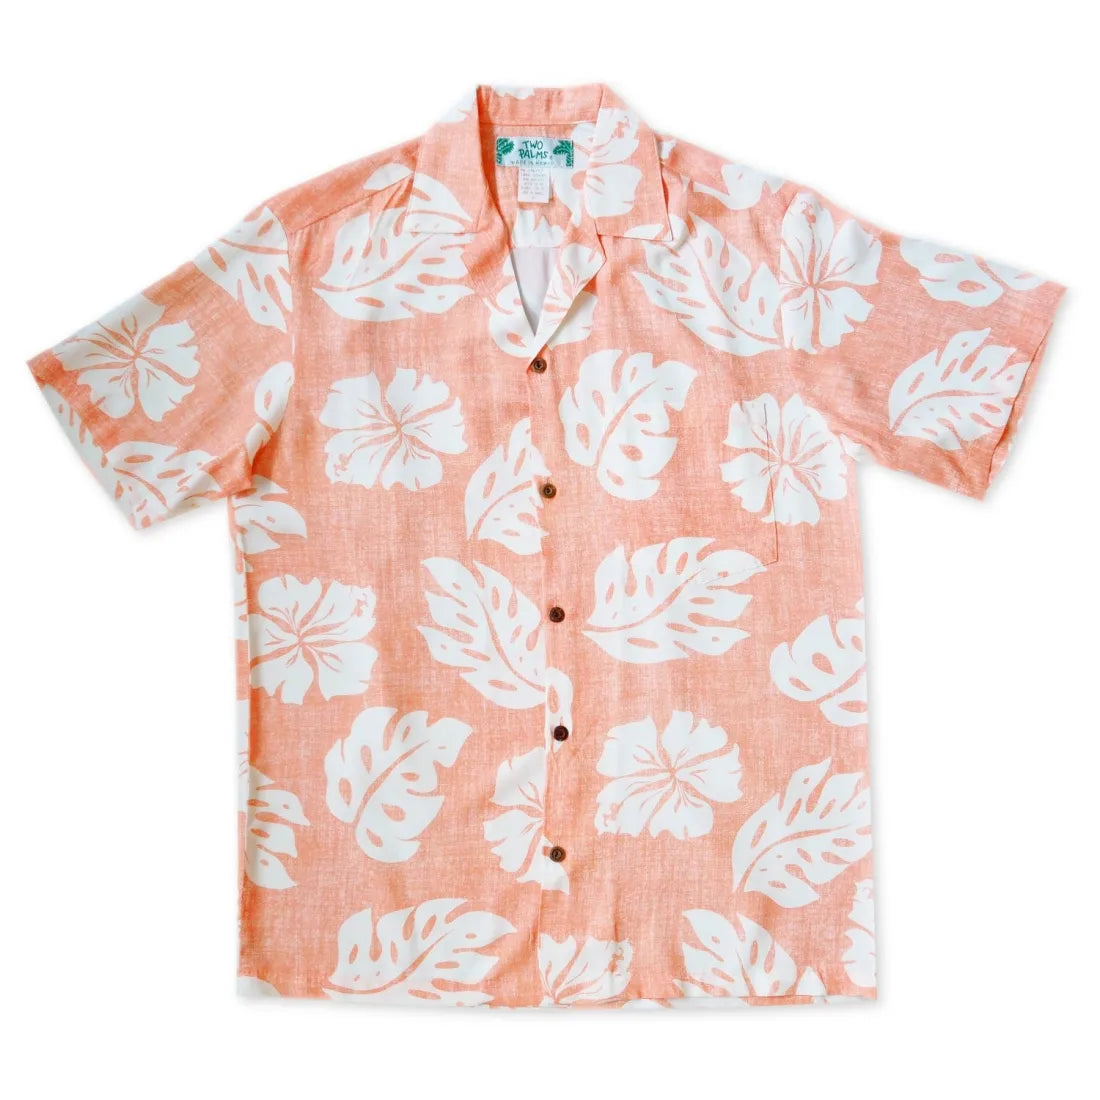 Tradewinds Orange Hawaiian Rayon Shirt - Made In Hawaii